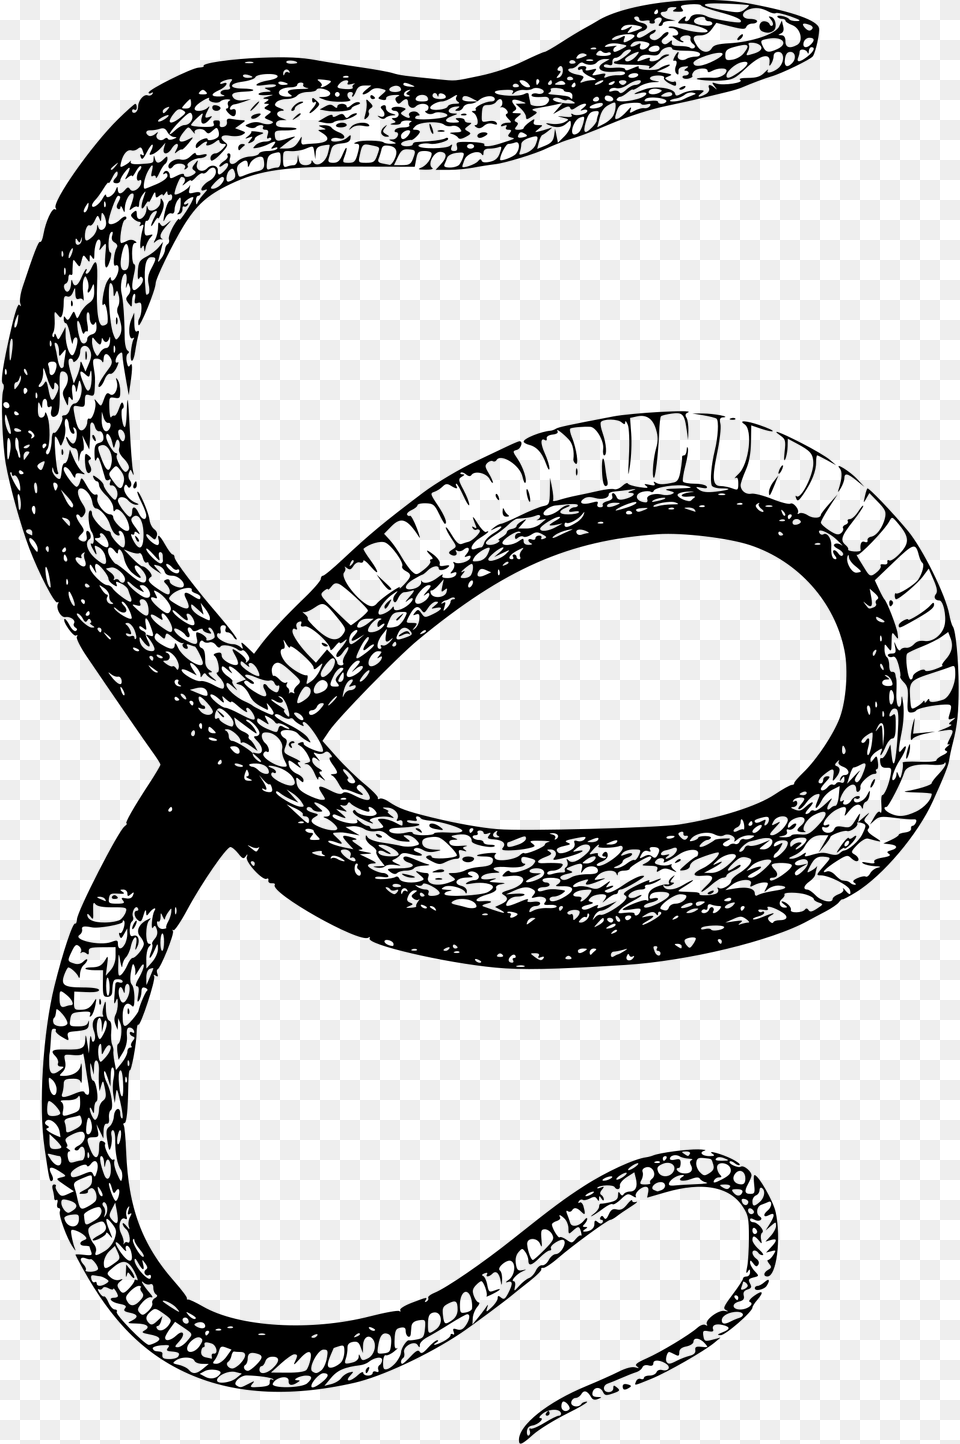 Drawn Snake Snake Snake Drawing Transparent, Gray Png Image